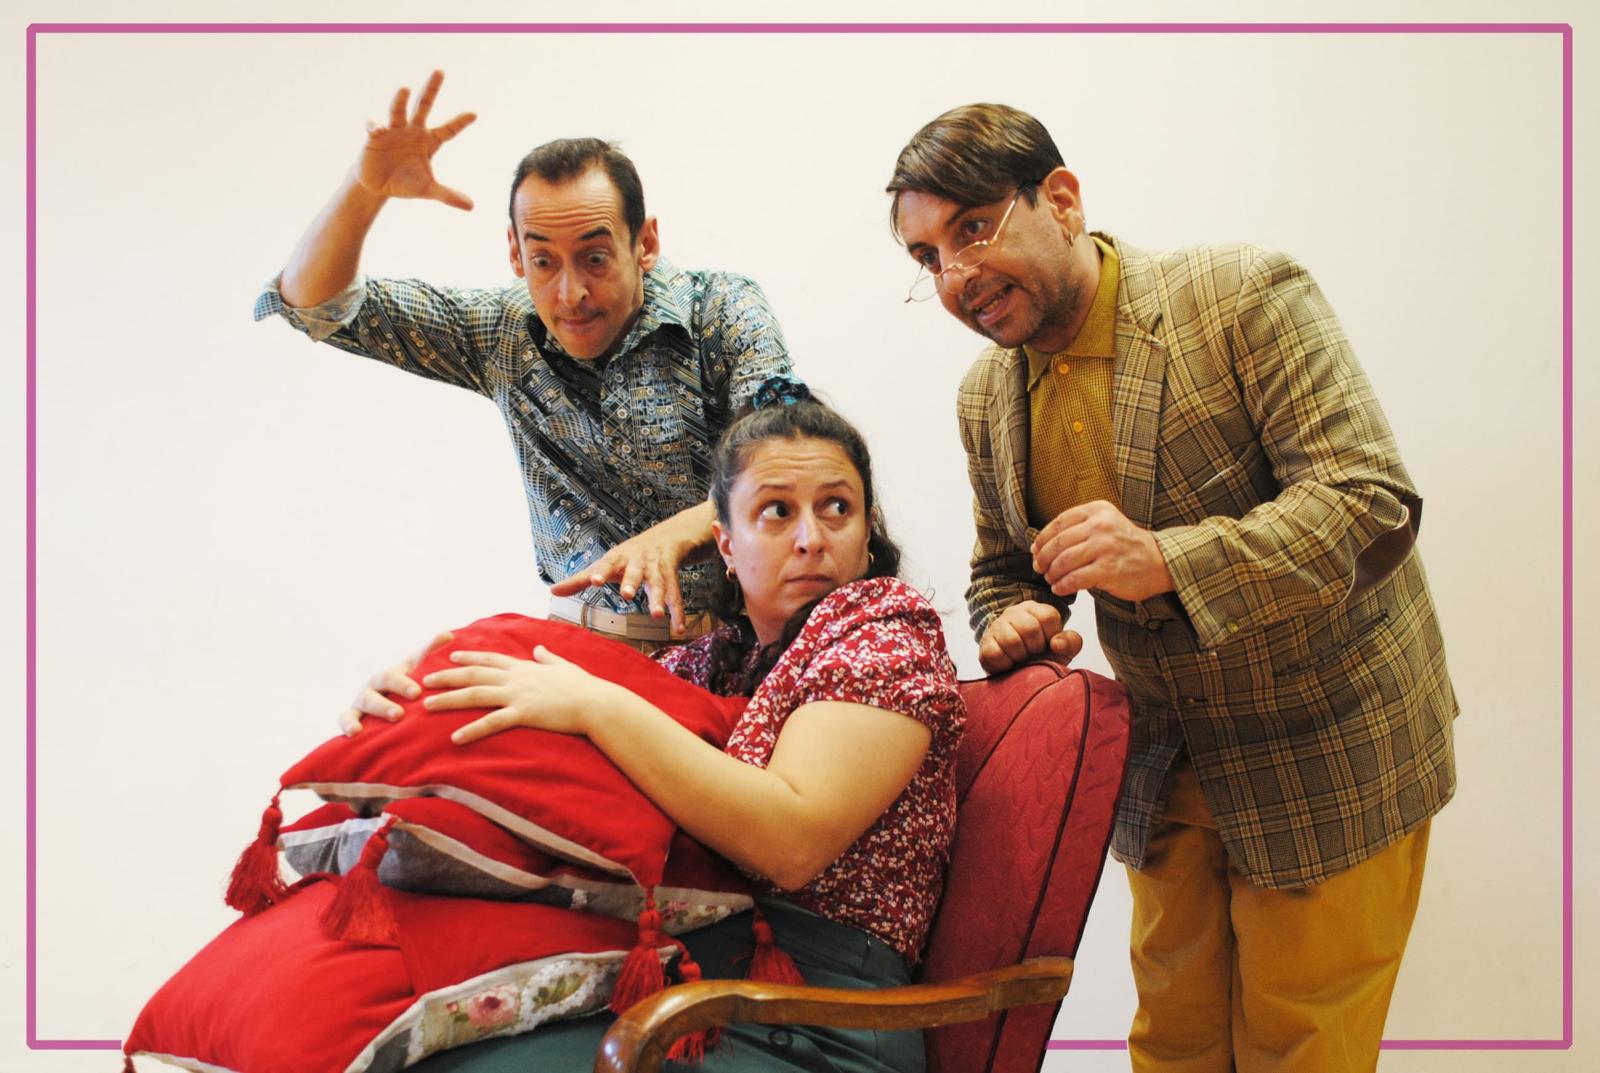 Το νέο θεατρικό έργο «ΠΟΥΠΟΥΛΑpp» από την Ομάδα Κοπέρνικος στο Ίδρυμα Μιχάλης Κακογιάννης